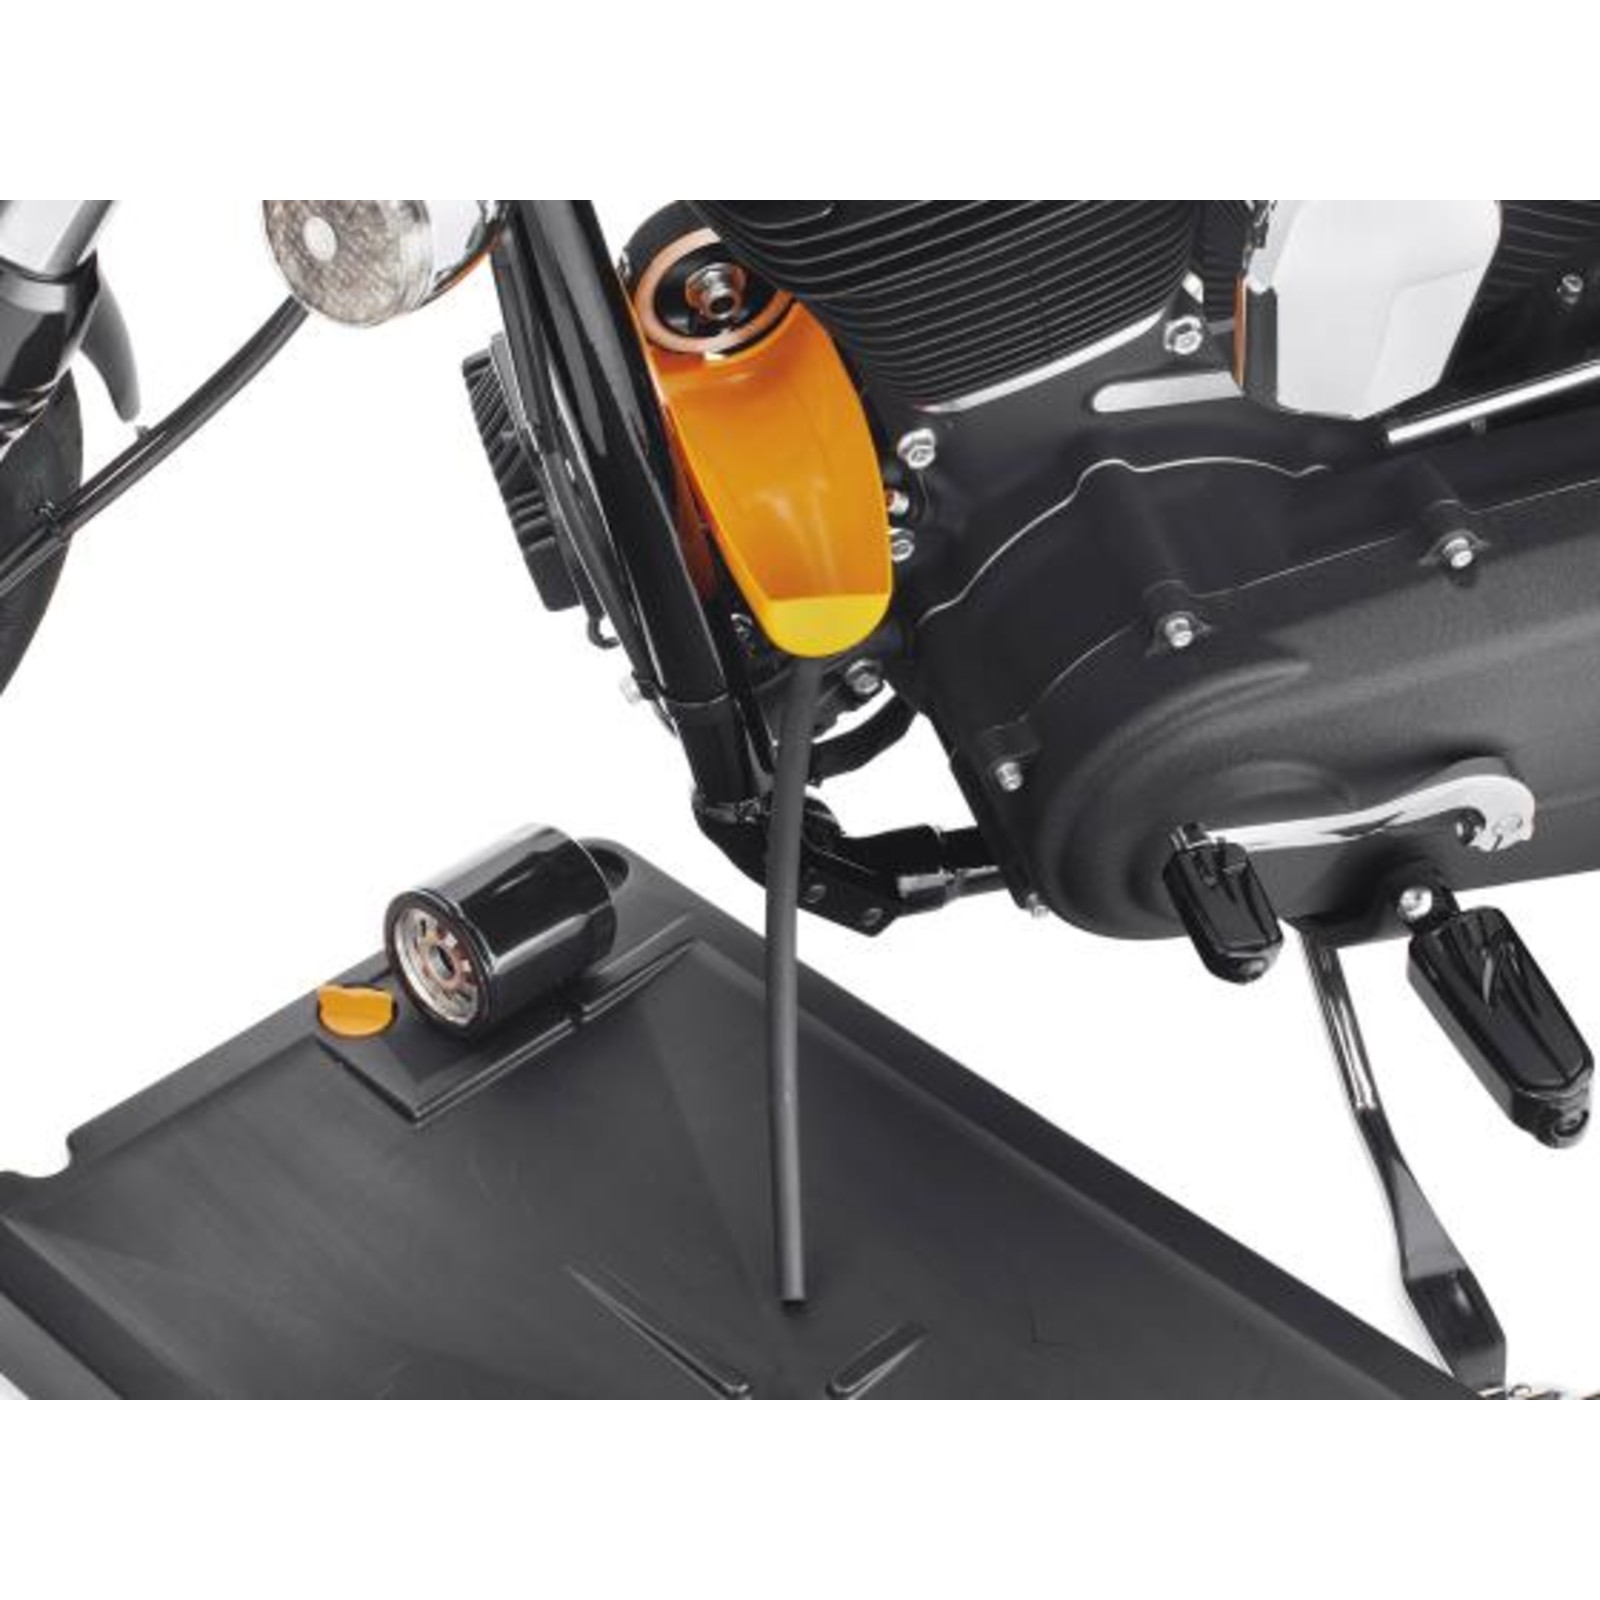 Öl-Ablassschraube, Colony, magnetisch, OEM Style, 1/2-20 -   - Zubehör & Ersatzteile für Harley-Davidson® Motorräder